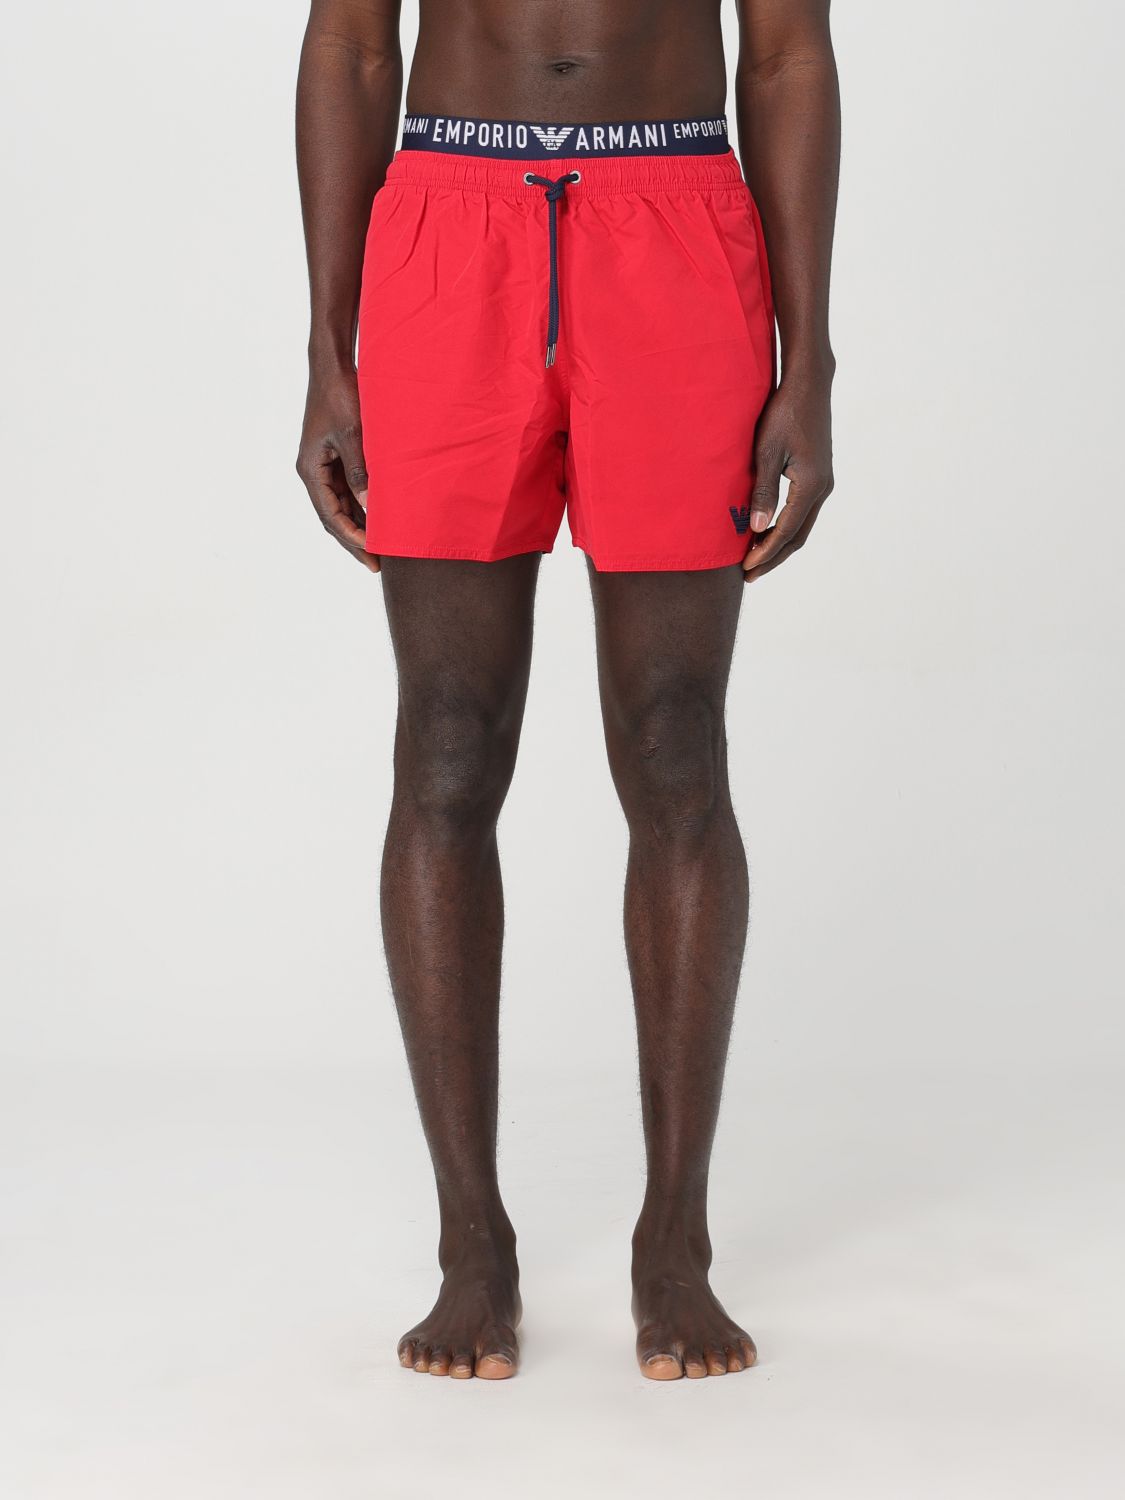 Swimsuit EMPORIO ARMANI SWIMWEAR Men colour Red - Size: 48 - male